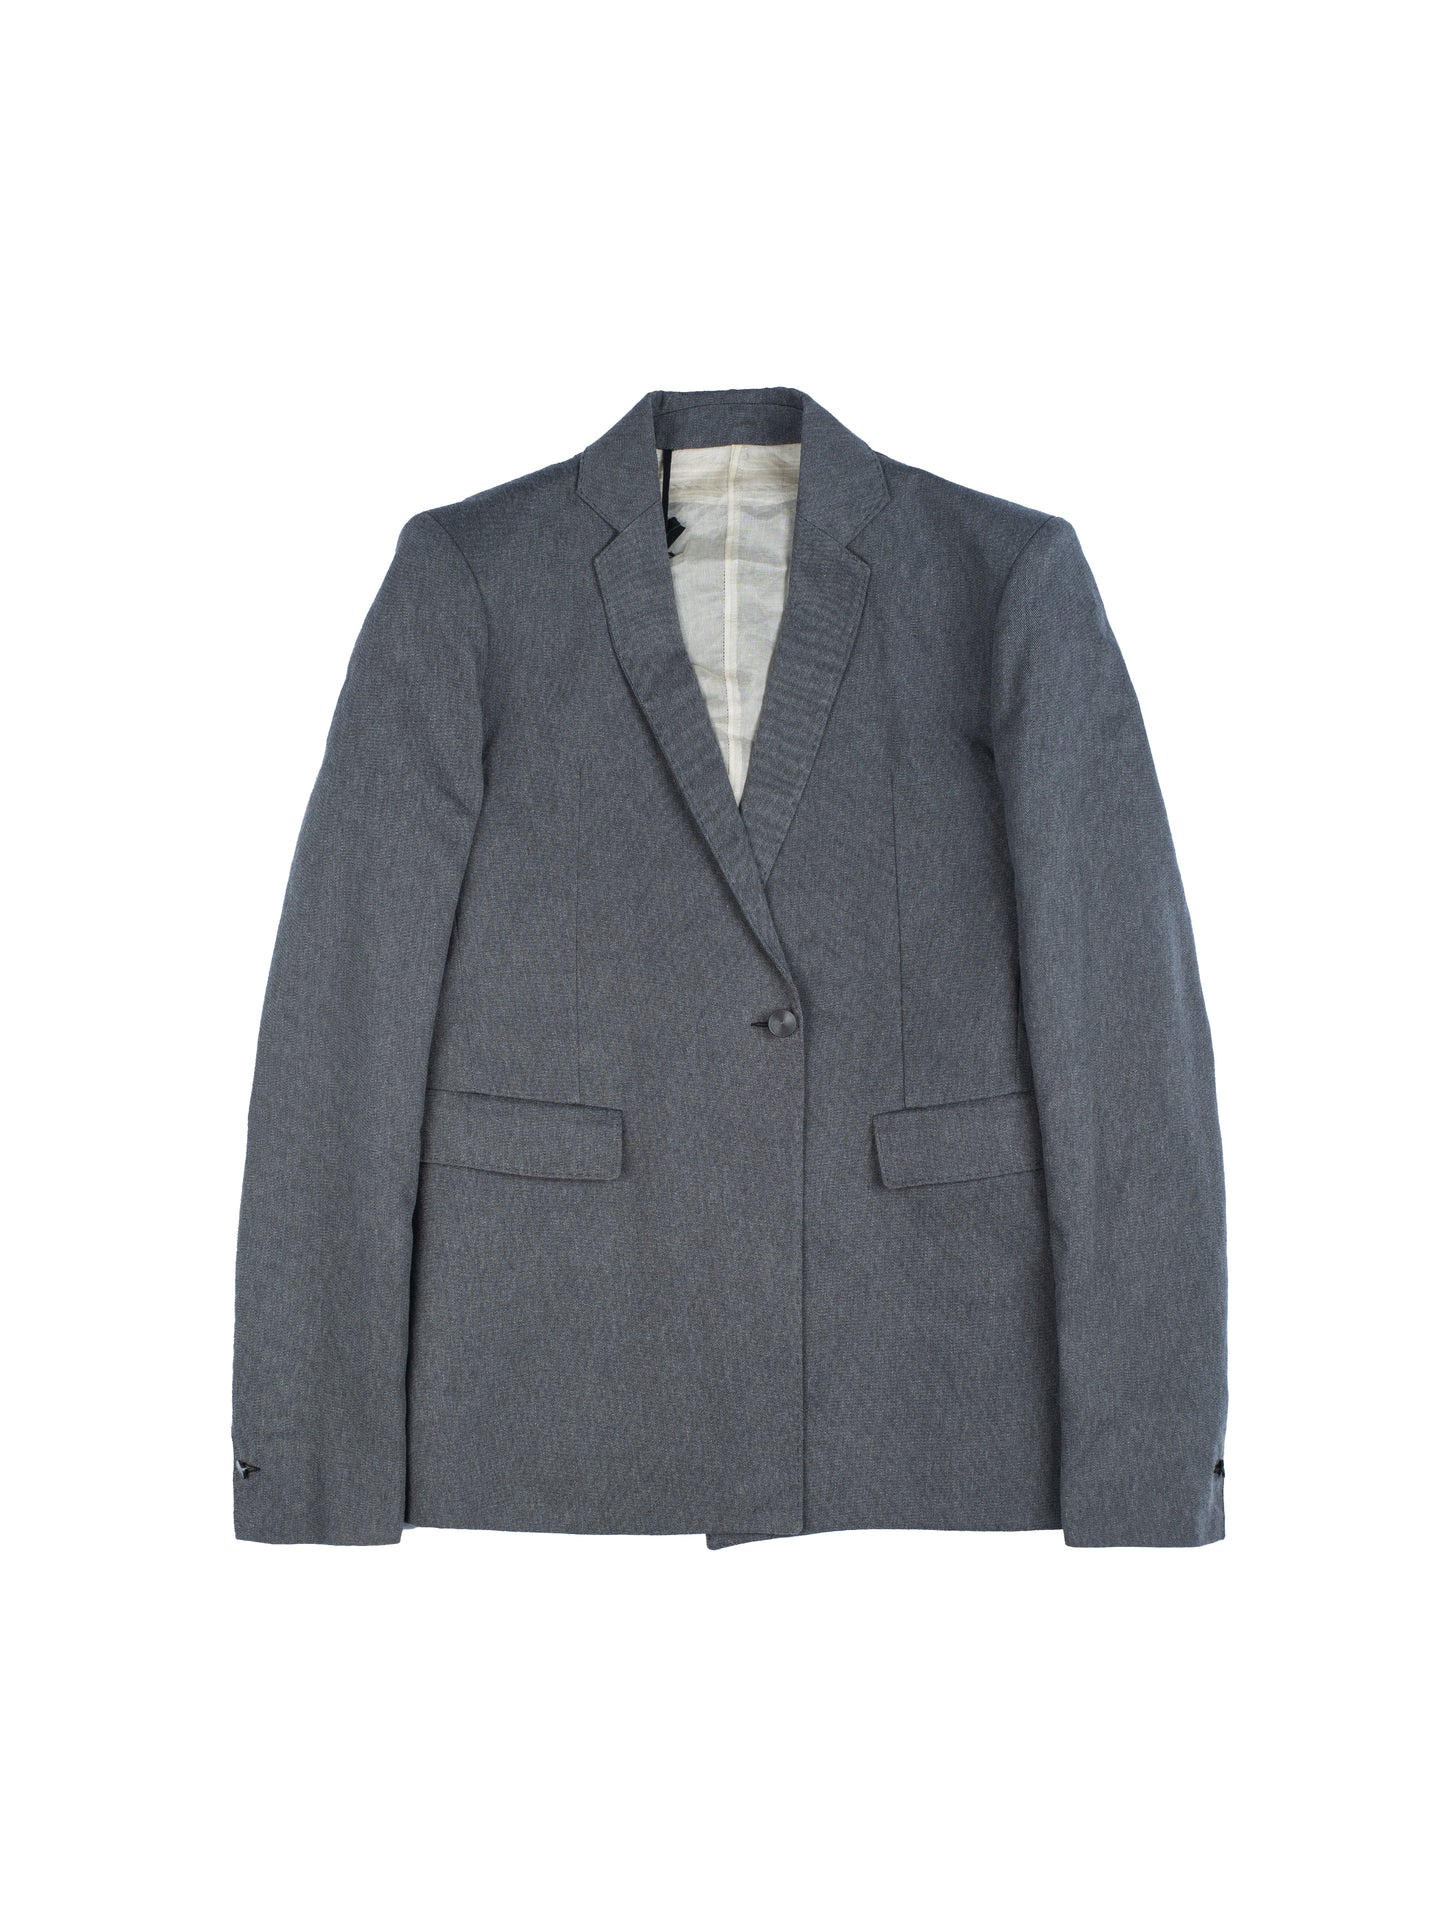 Boris Bidjan Saberi Suit1 Basalt Grey Blazer